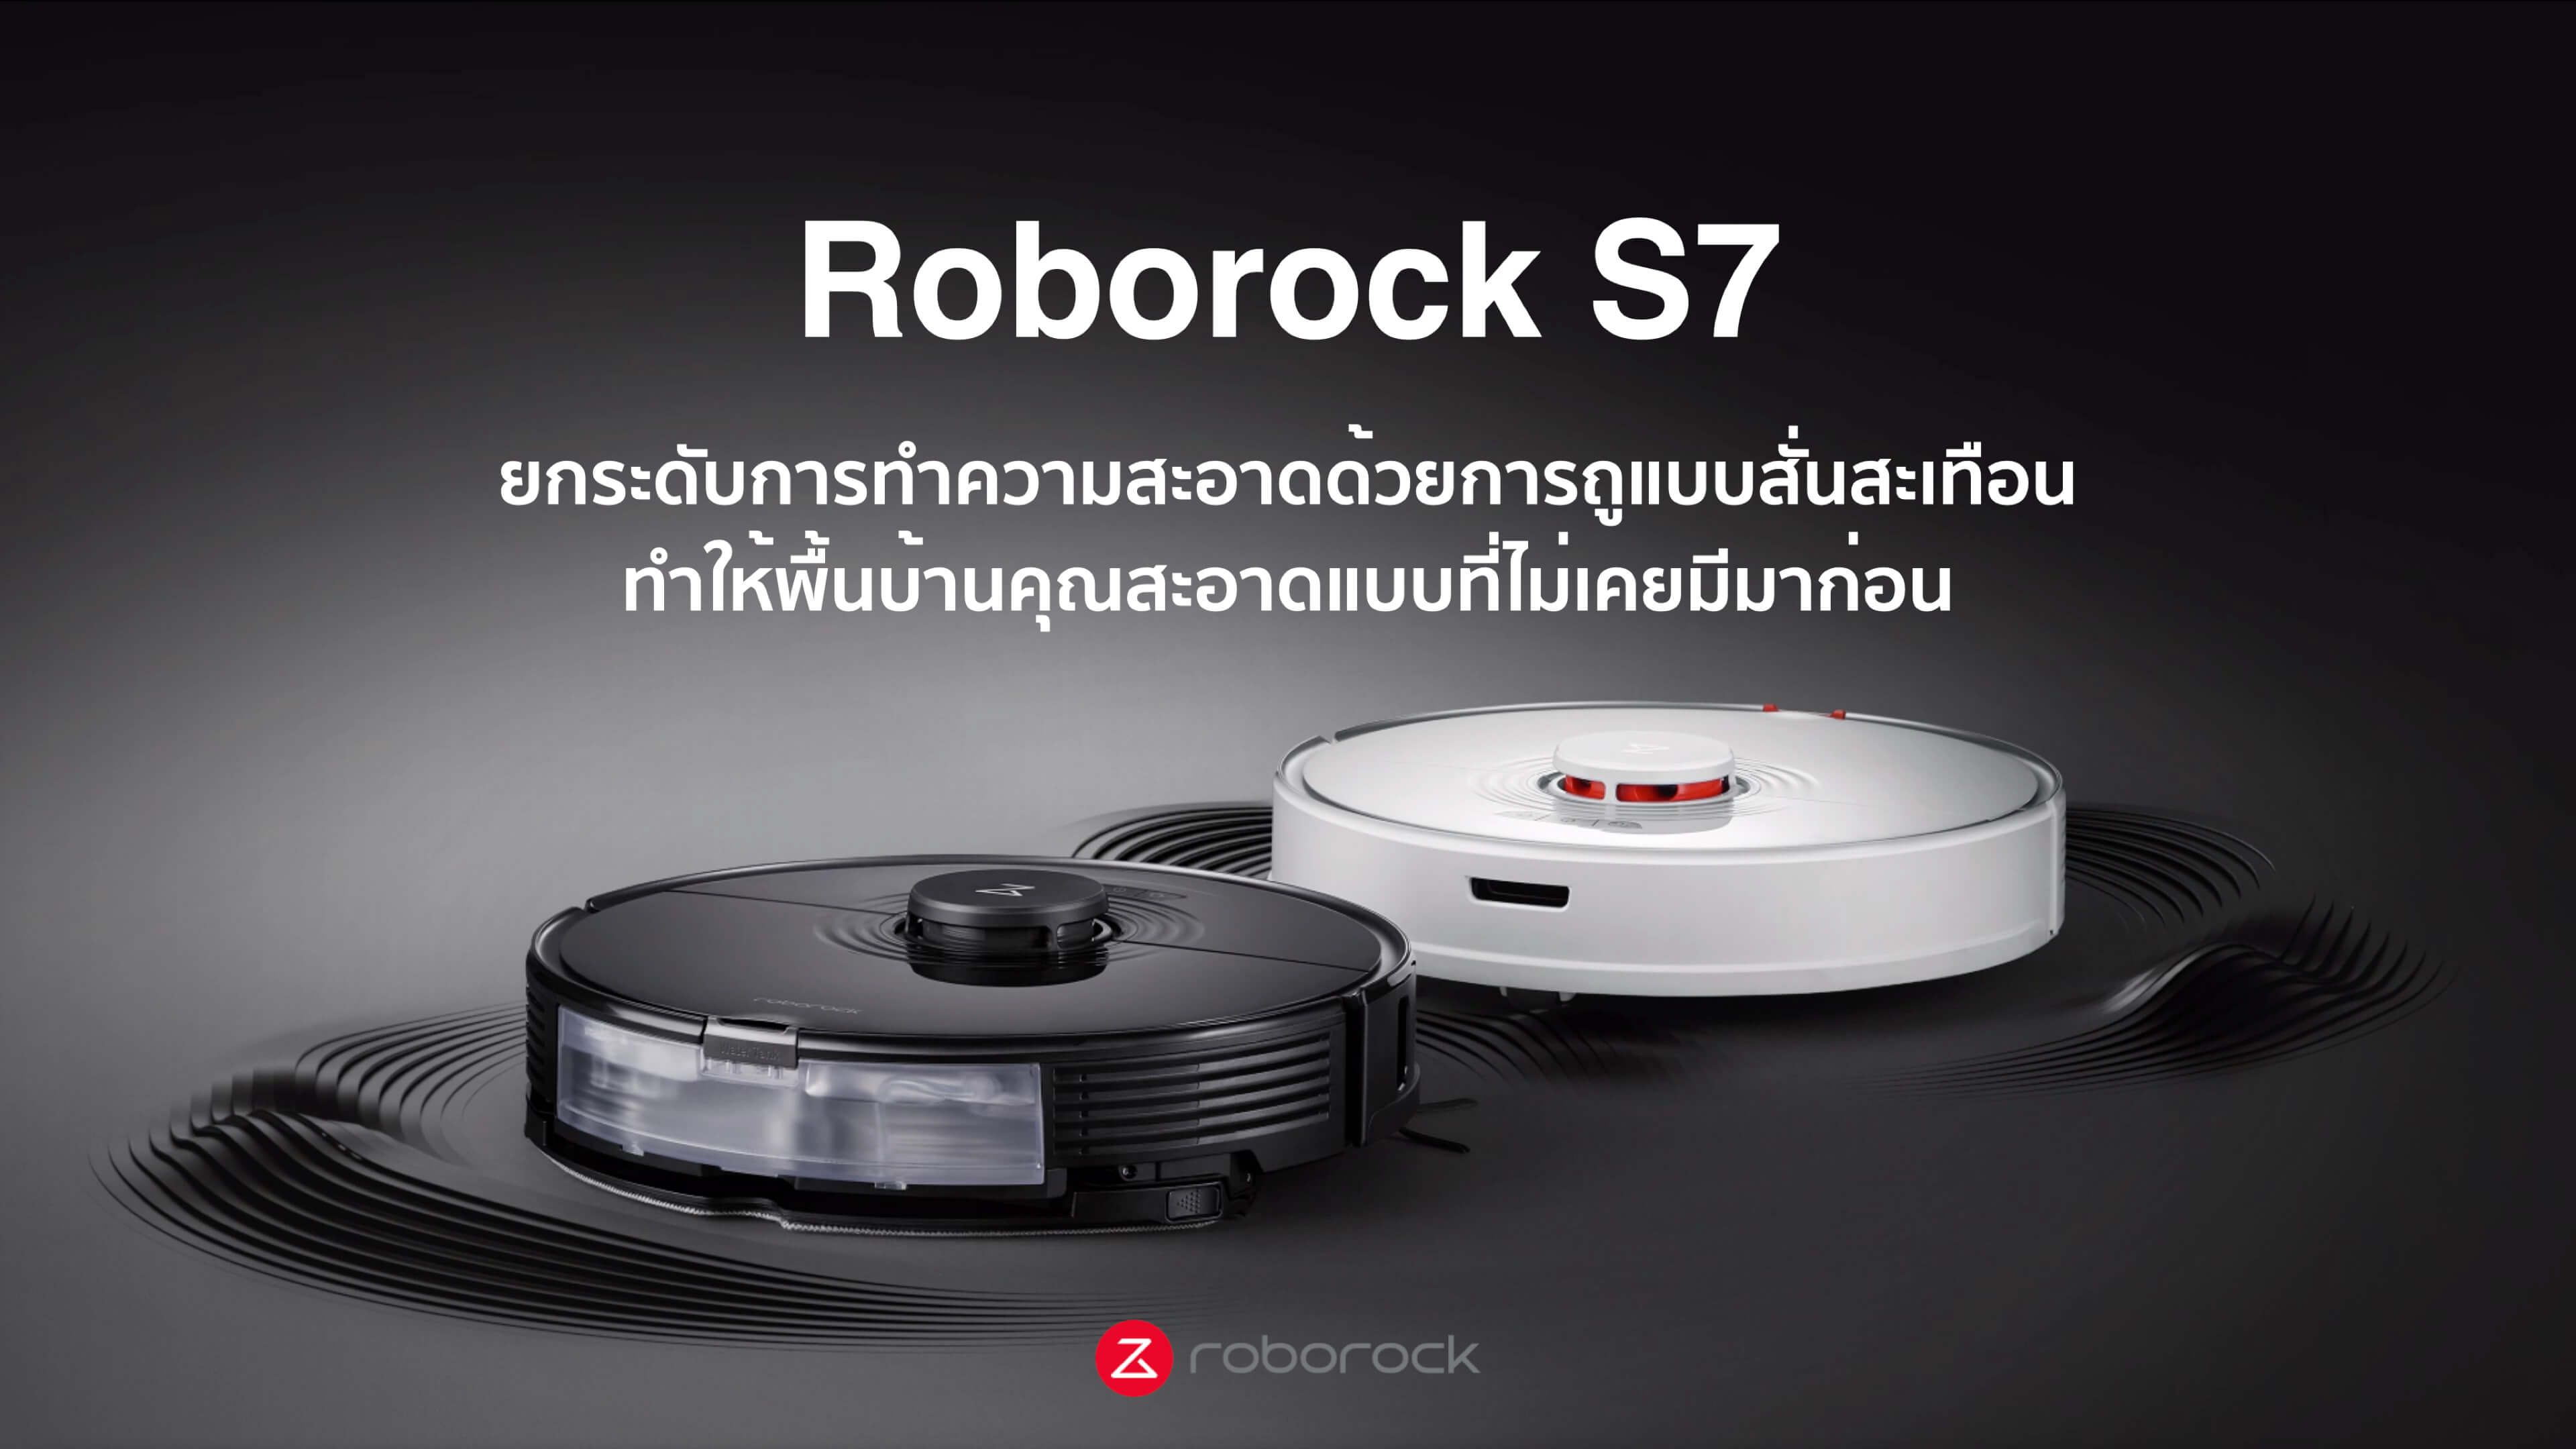 เกี่ยวกับสินค้า Roborock S7 หุ่นยนต์ดูดฝุ่นถูพื้น อัจฉริยะ โรโบร็อค Smart Robotic Vacuum and Mop Cleaner (Global Version)